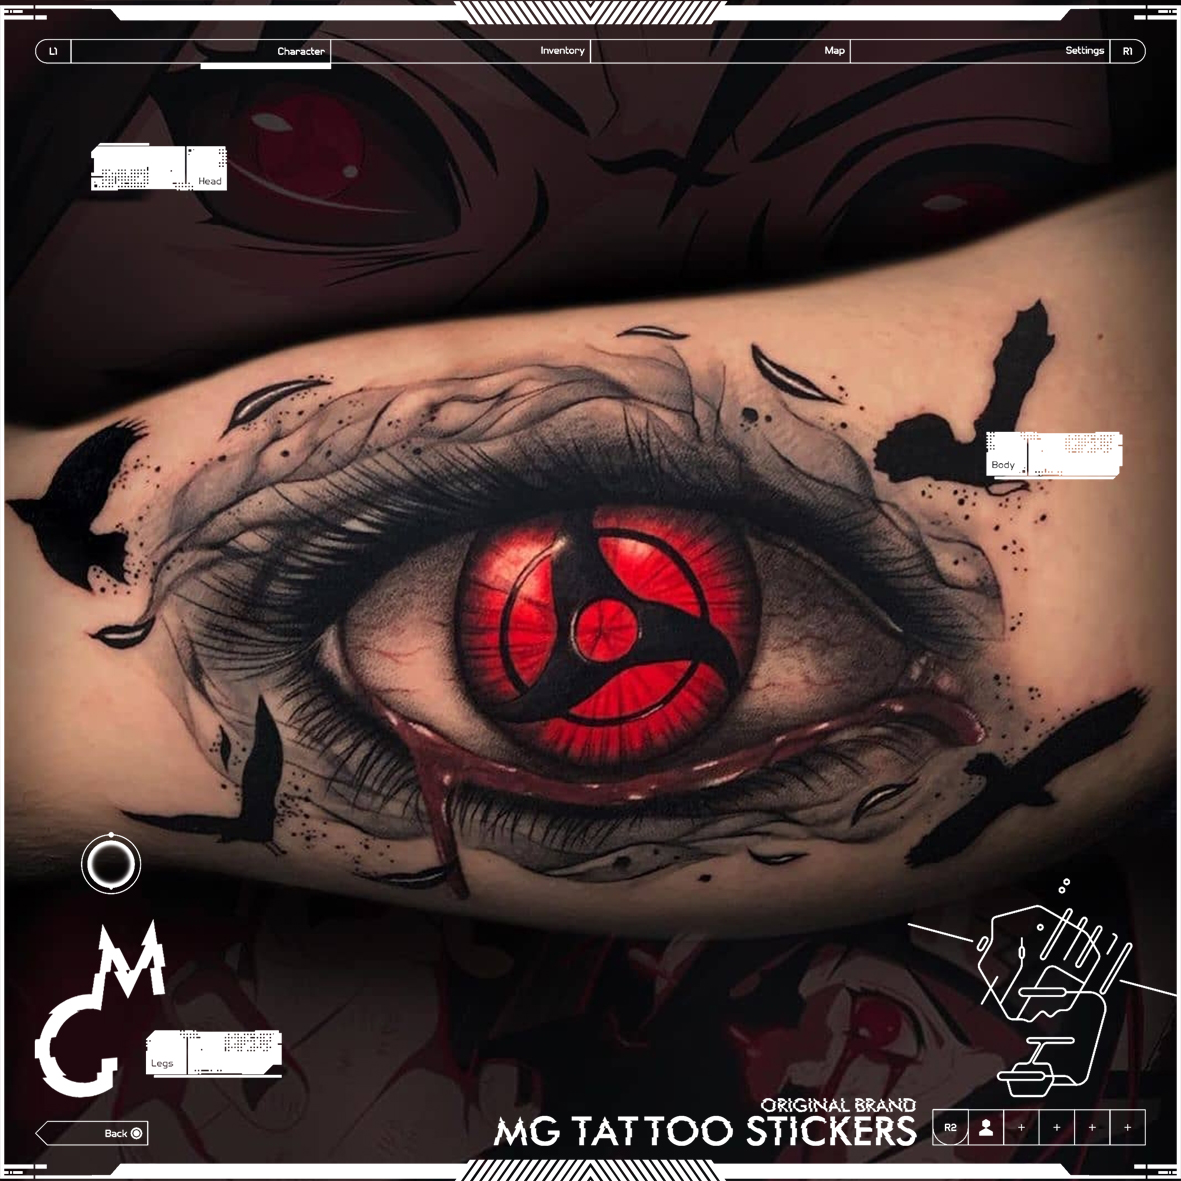 MG tattoo  万花筒写轮眼 火影忍者动漫卡通暗黑花臂纹身贴纸男女